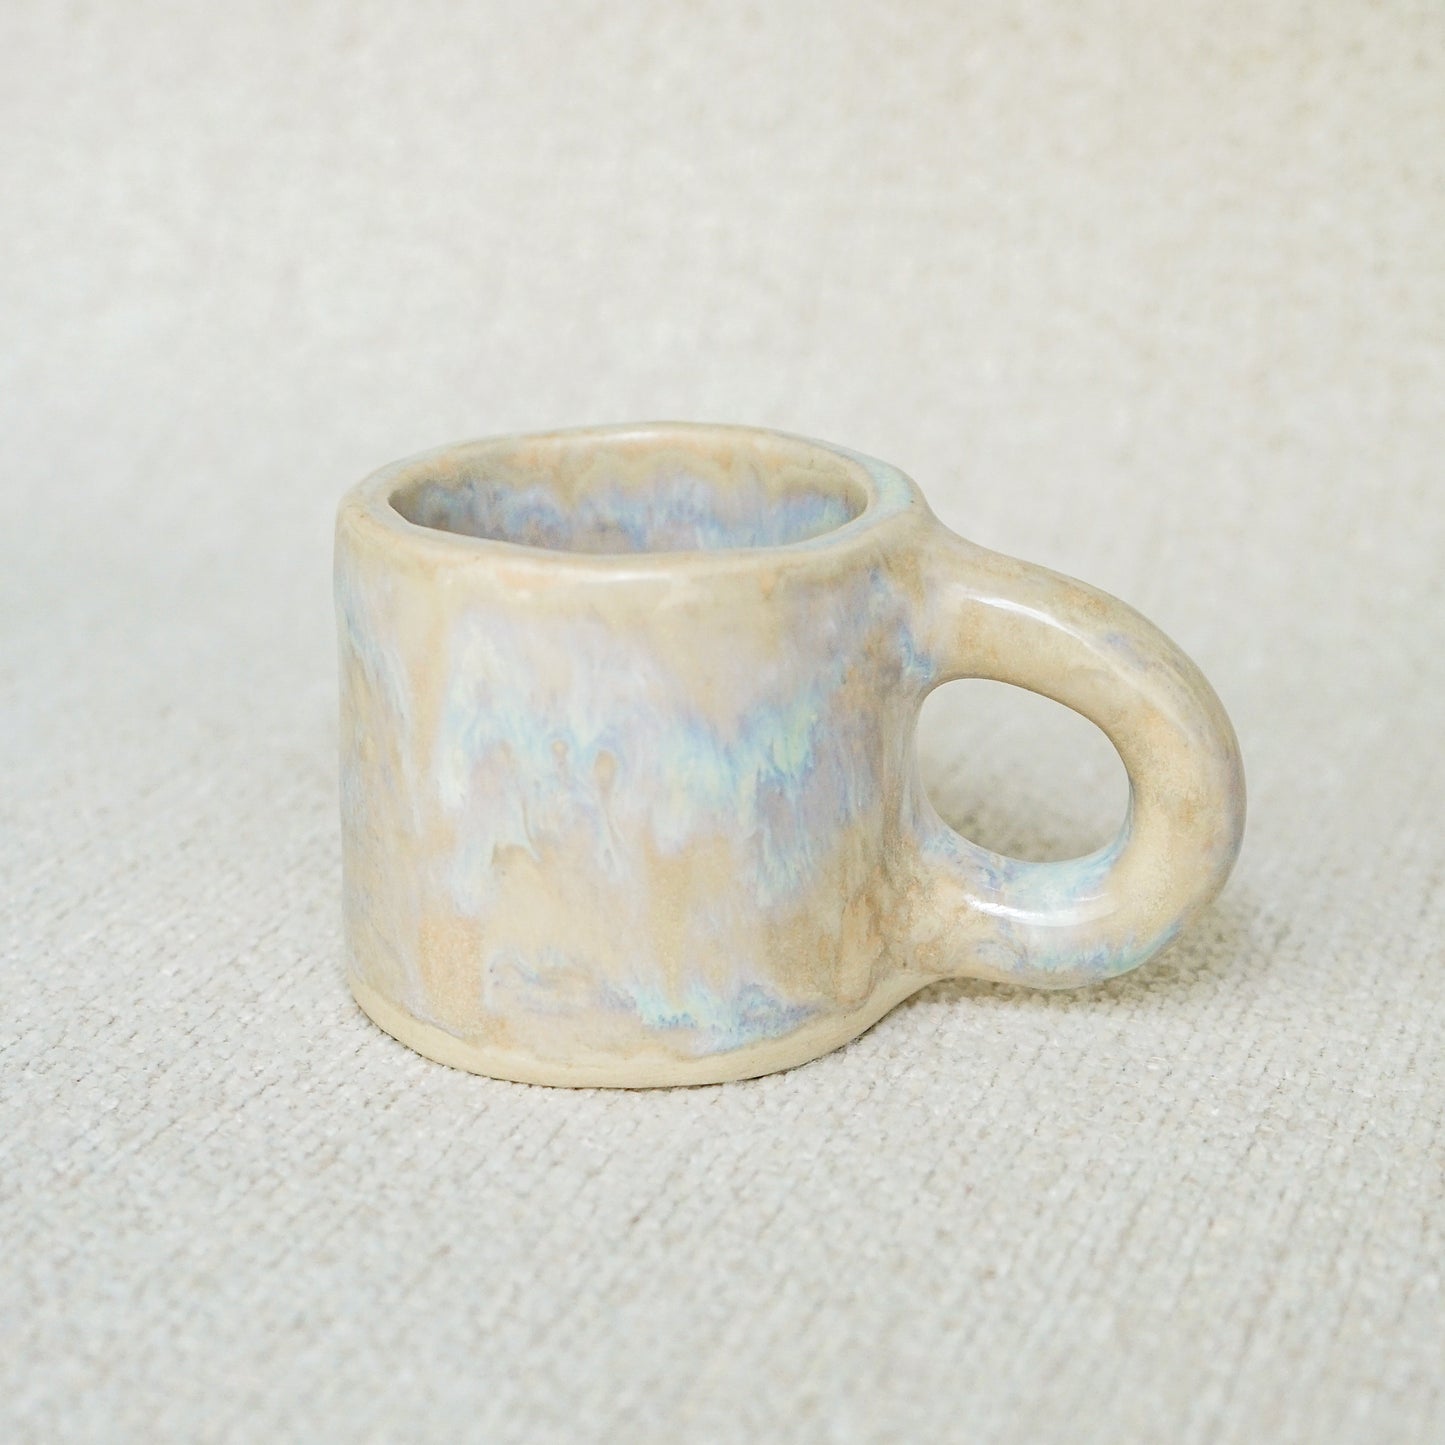 The Nebula + Sandy Espresso Mug